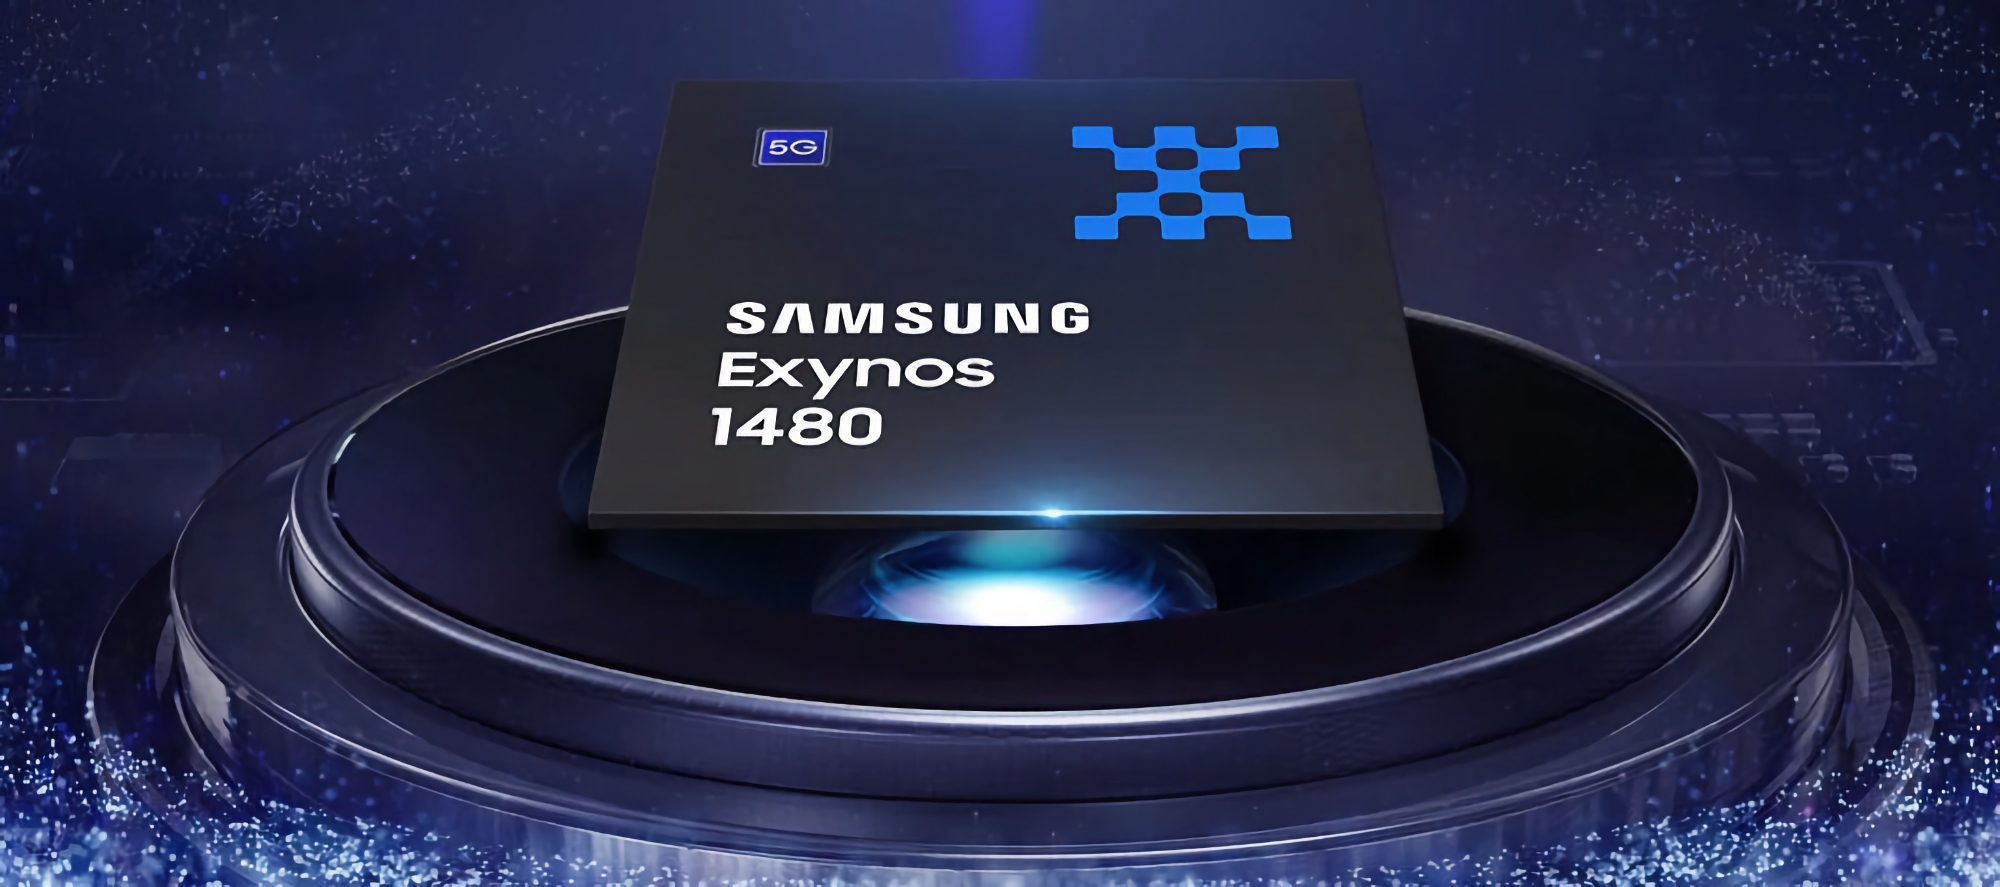 Samsung ujawnił specyfikację układu Exynos 1480: osiem rdzeni, 4 nanometry i grafika Xclipse 530 z architekturą AMD RDNA 2